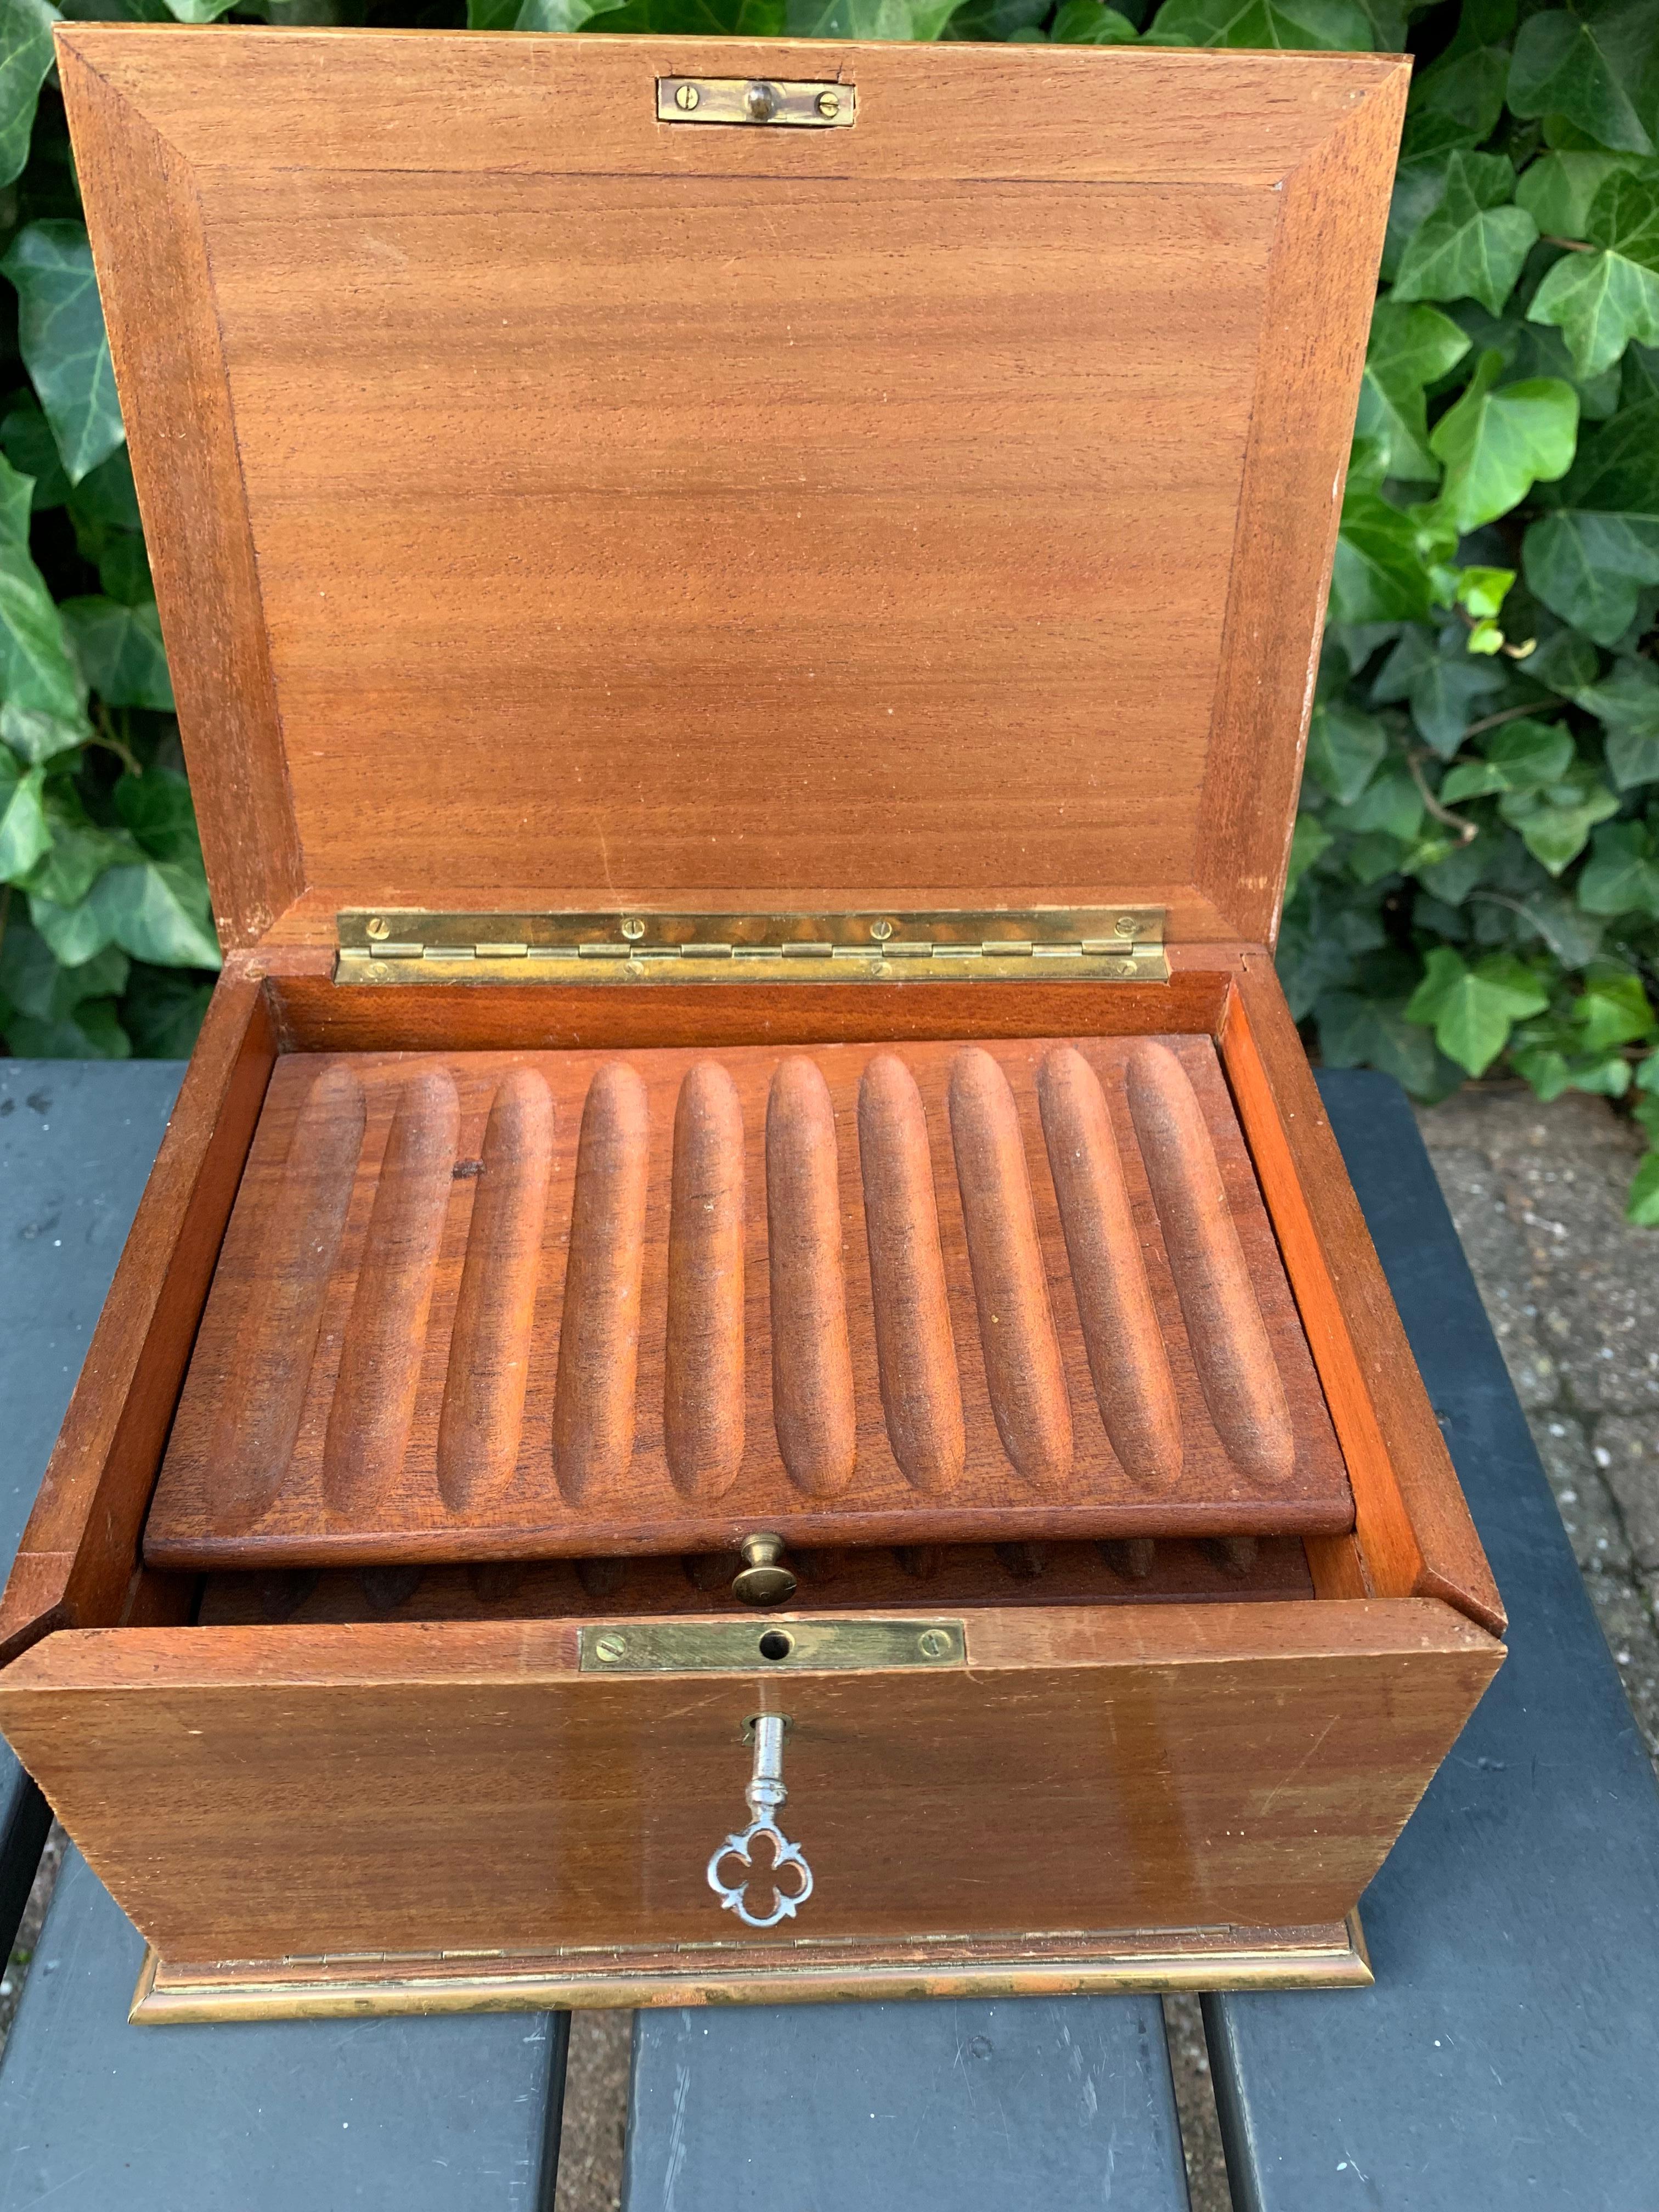 Gute Qualität und ausgezeichneter Zustand antike Box.

Diese Zigarrenkiste mit geradem Futter ist ein weiteres zeitloses Stück, das sich auch hervorragend als Geschenk für jemanden eignet, der noch nie eine Antiquität besessen hat. Alles wurde zu